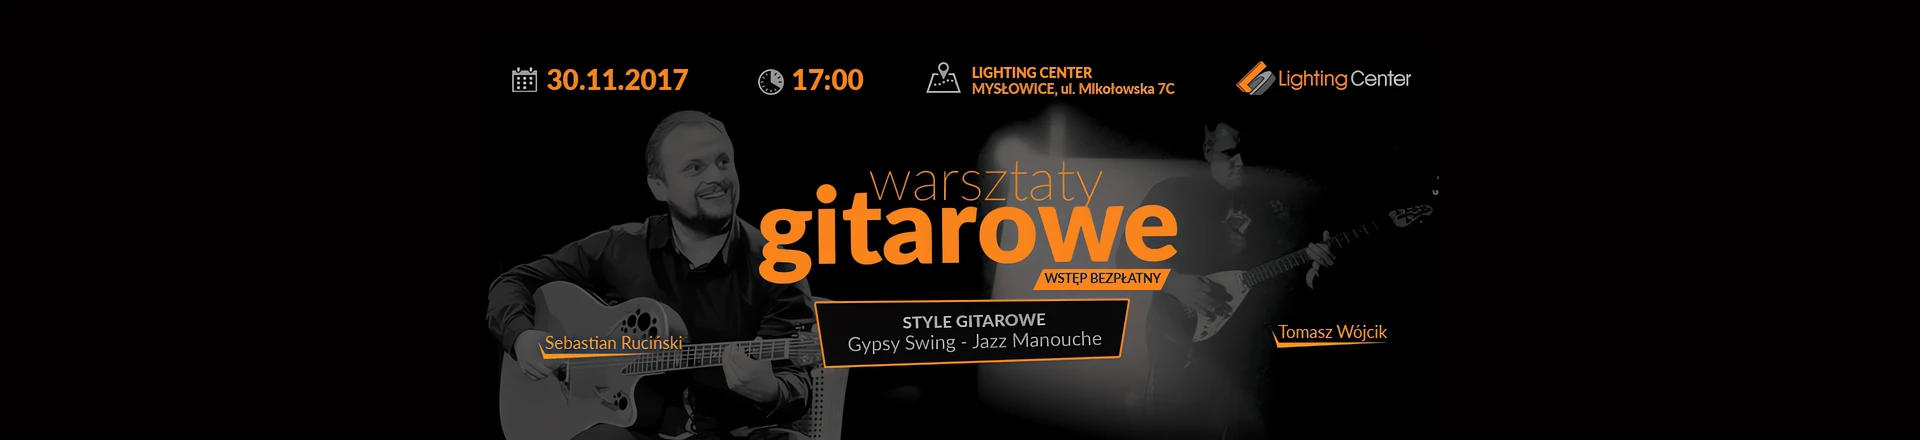 Warsztaty Gitarowe - Gypsy Swing - Jazz Manouche już 30.11!